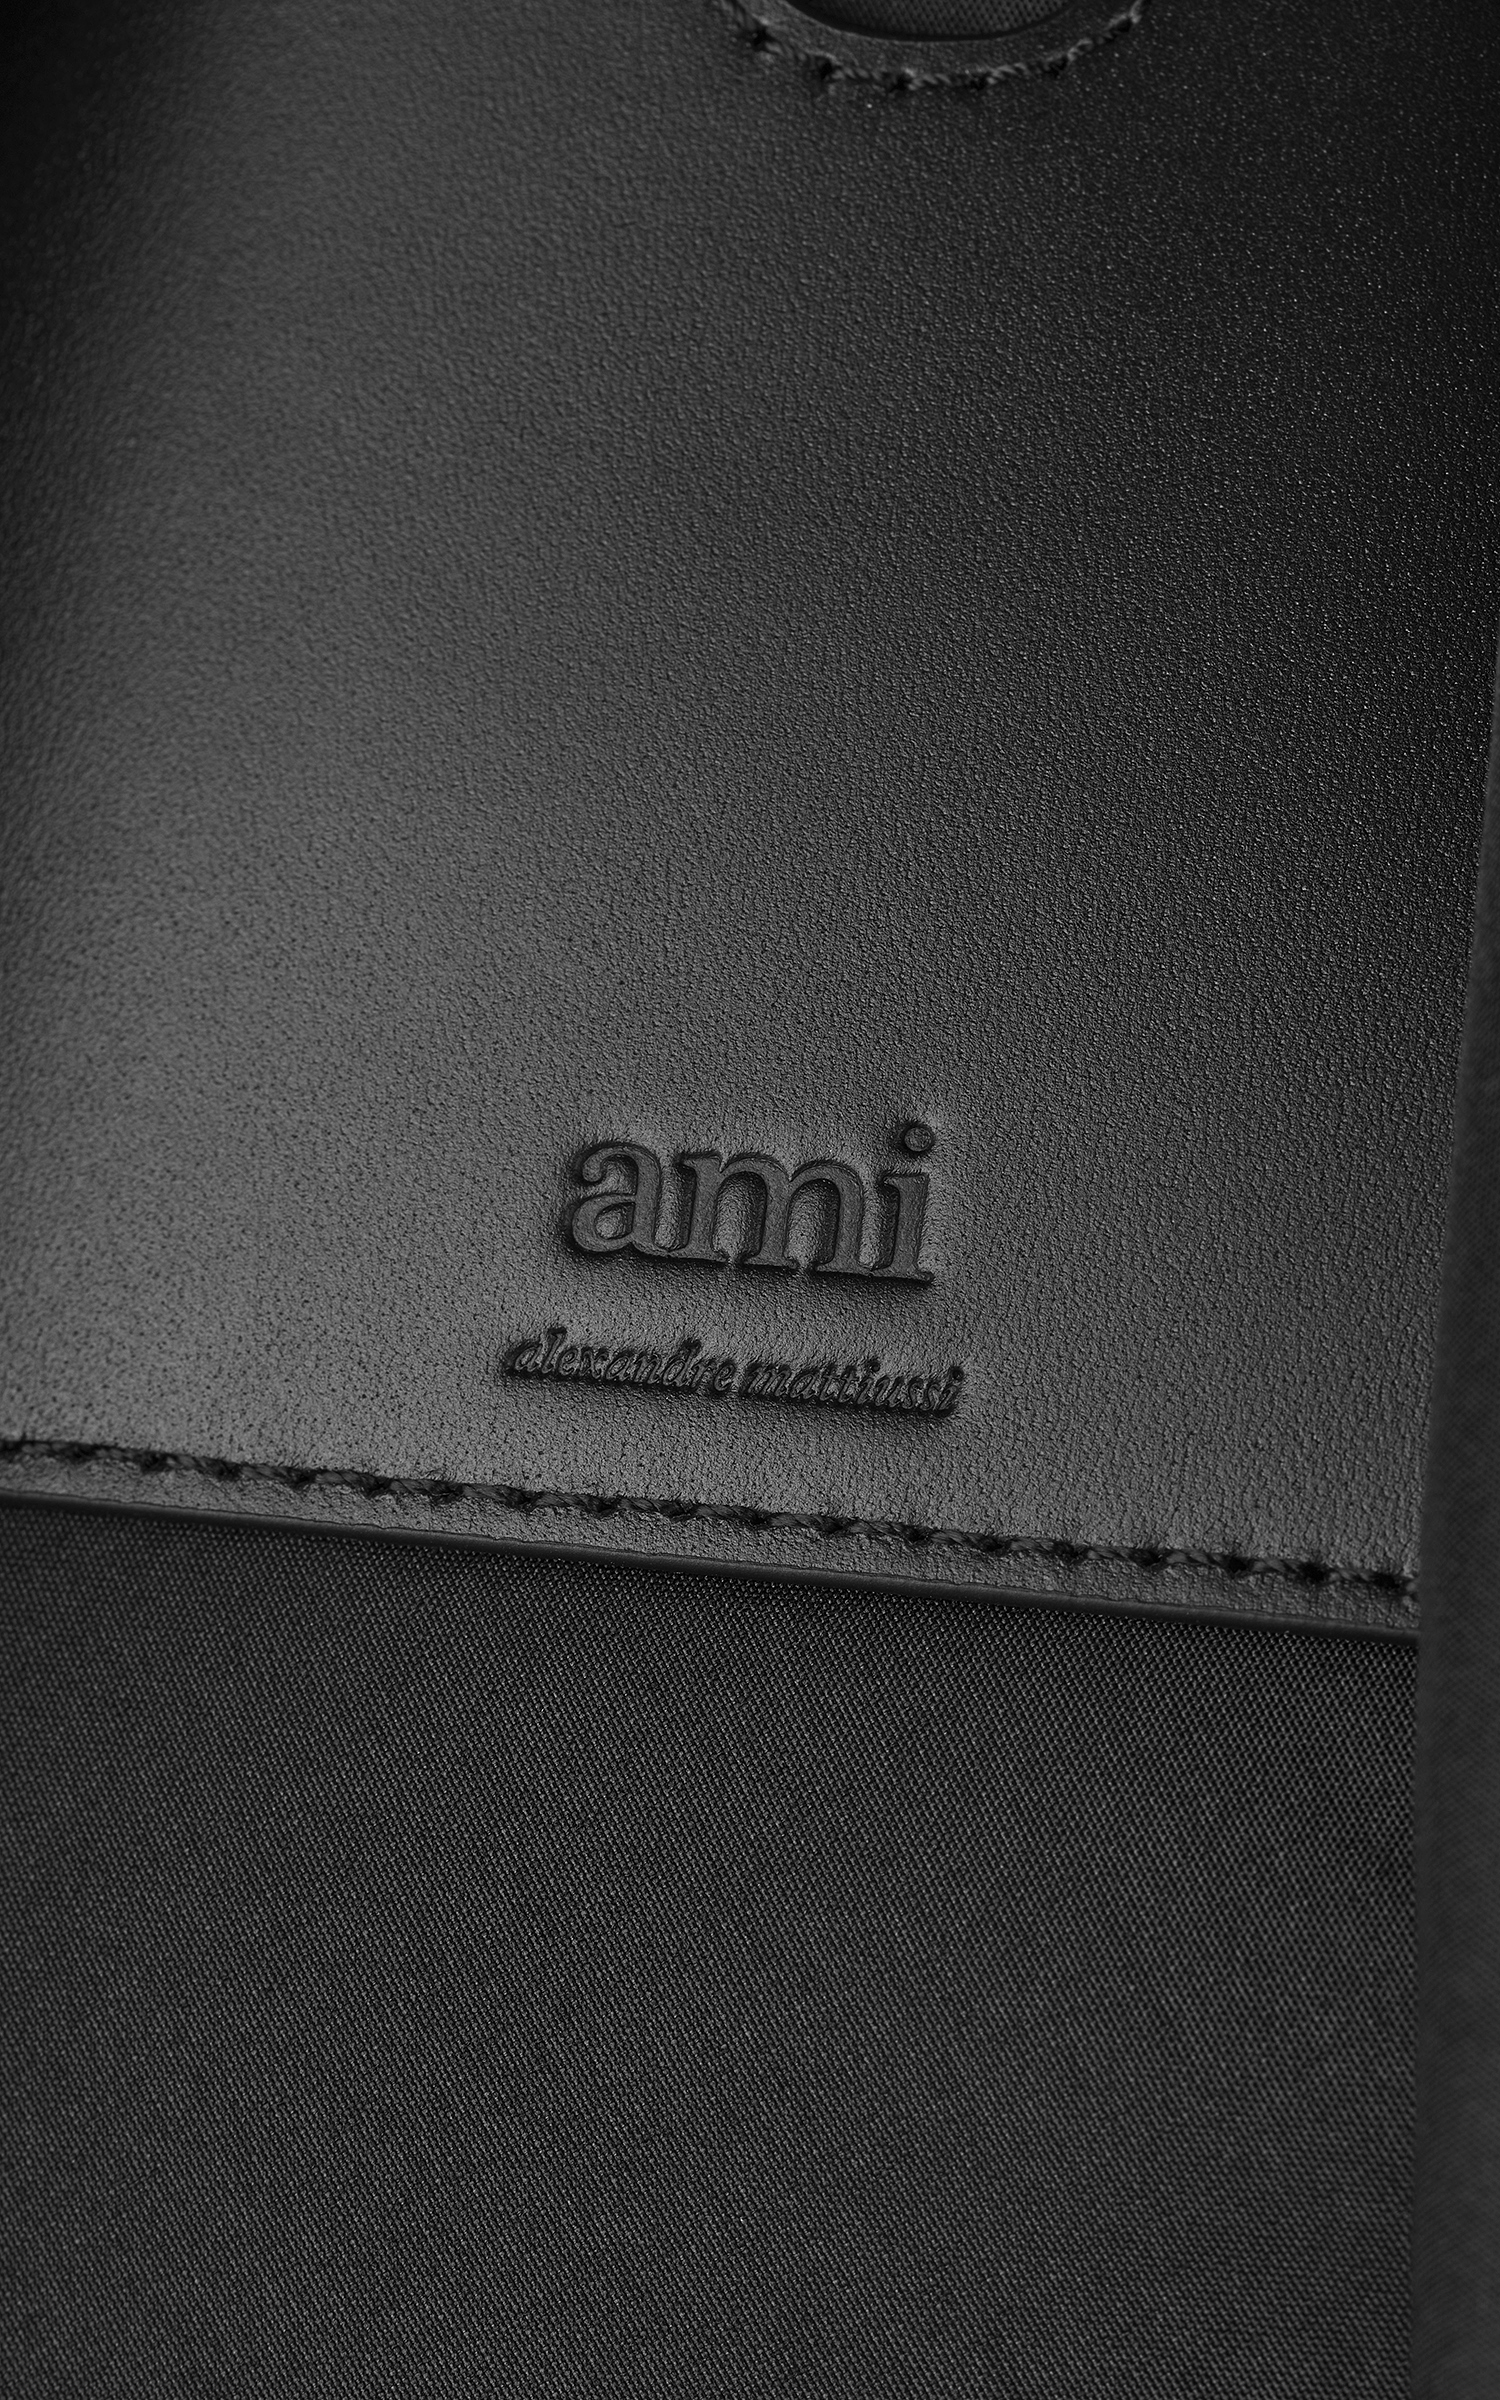 AMI Paris Backpack With Ami De Coeur Rivet Black